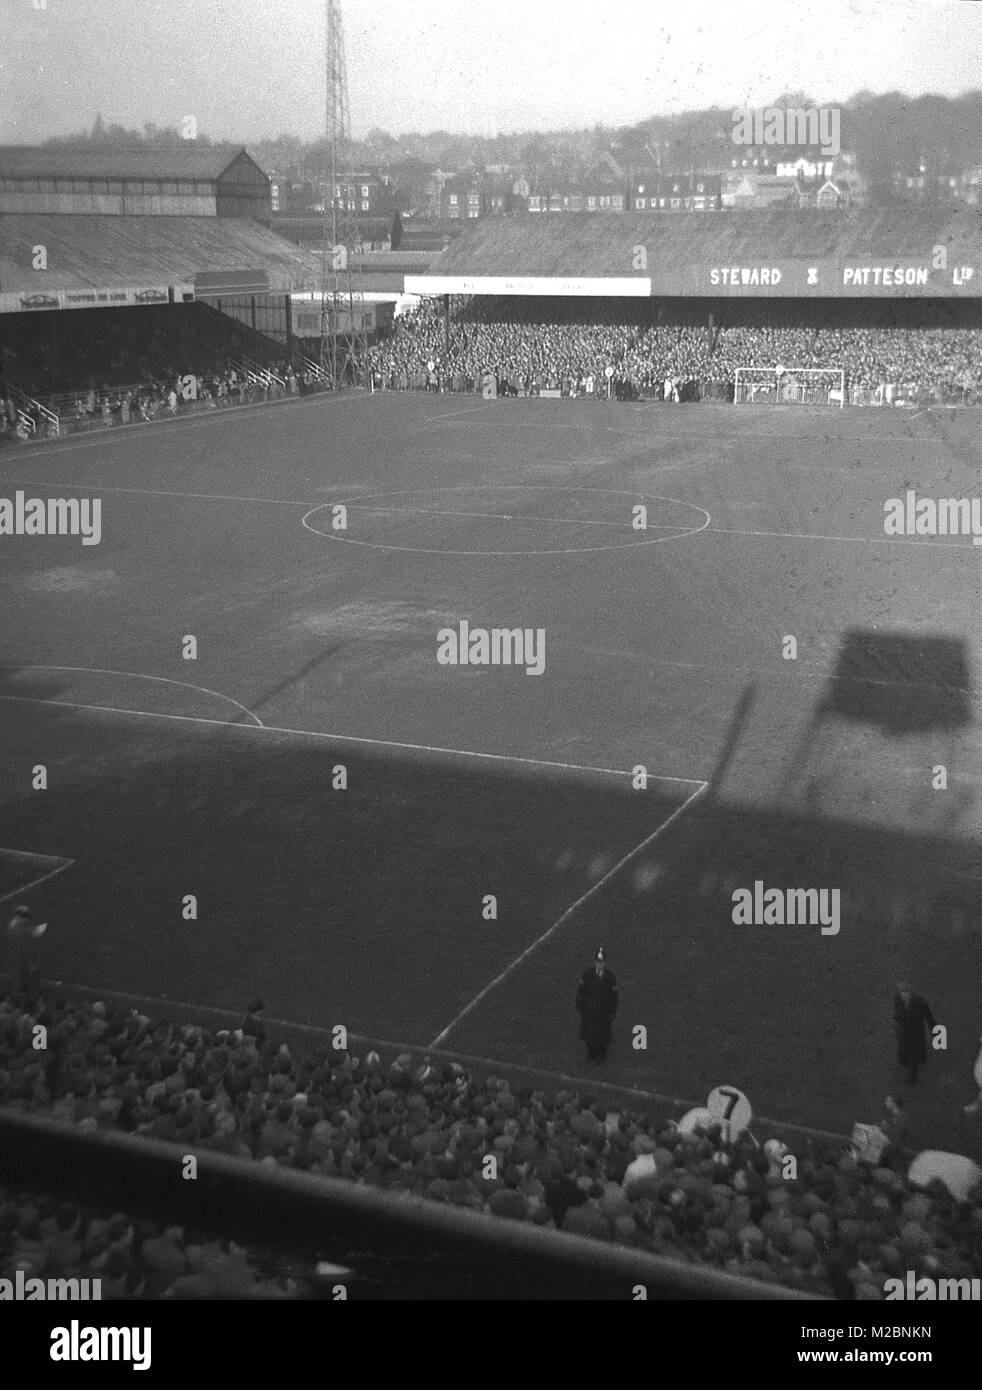 1960, historische Bild, auf dem Fußballplatz von Norwich FC vor einem Spiel, aus dem Fernsehen Gantry mit Blick auf das Stadion und die Umgebung, Norwich, England, UK. Eine Anzeige für eine der Sponsor des Vereins, der lokalen Brauerei tewart & Patteson Ltd" kann am anderen Ende der Pitch gesehen werden. Stockfoto